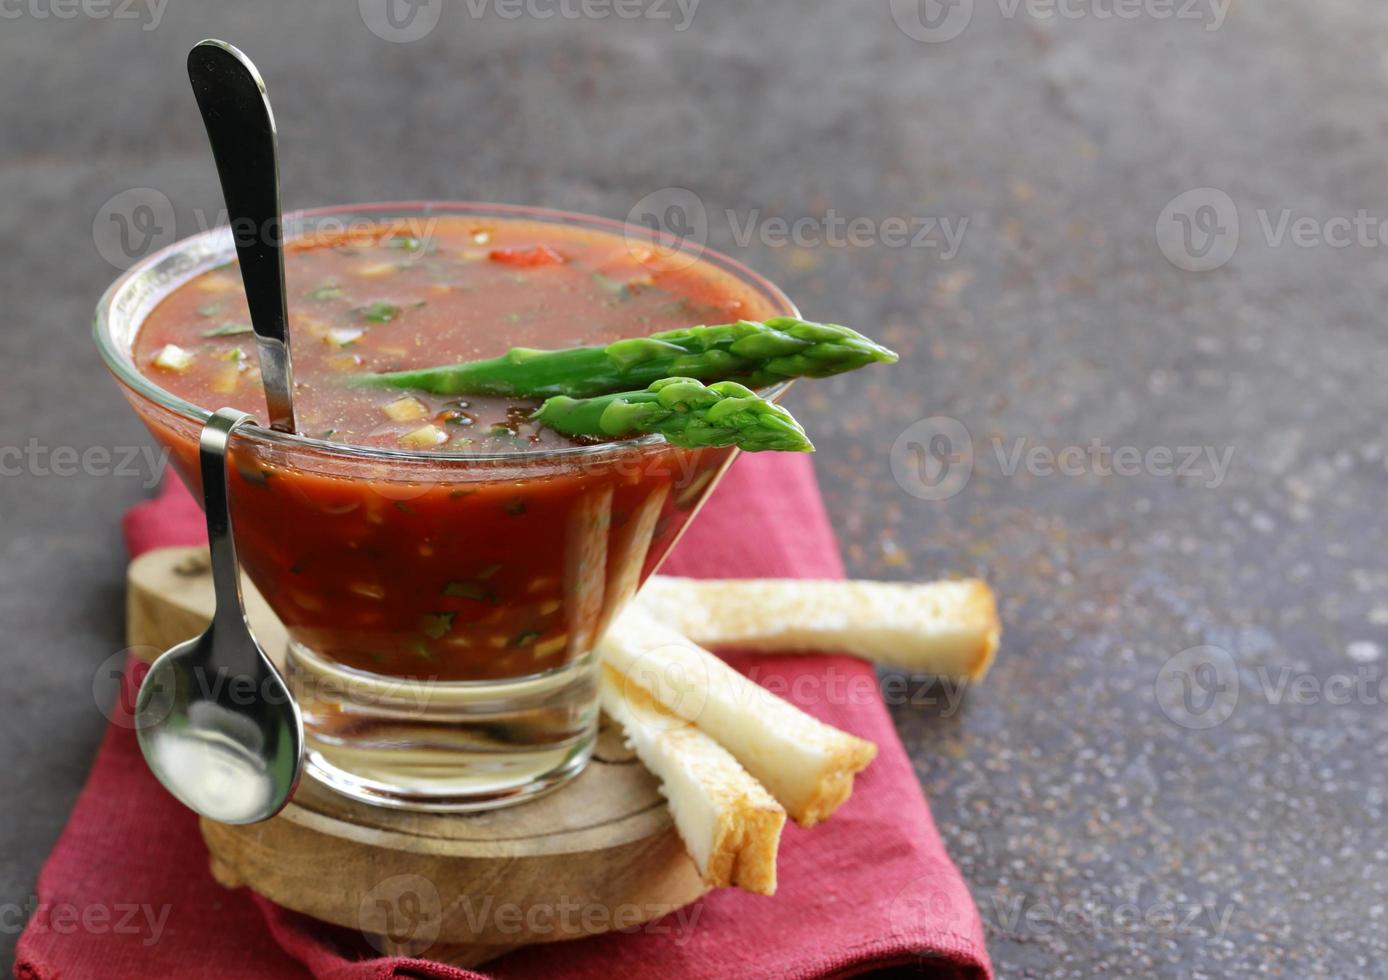 traditionell spansk kall tomatsoppagazpacho med sparris och kex foto